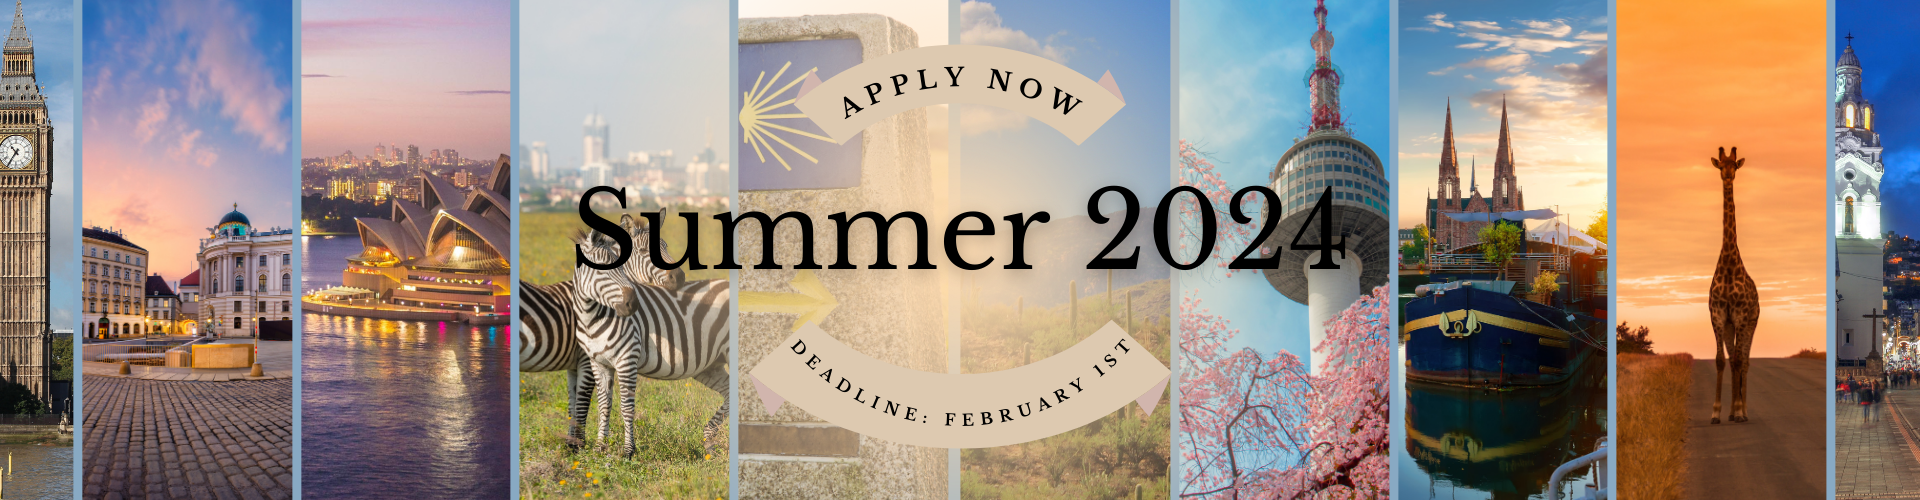 Summer 2024 Deadline February 1st